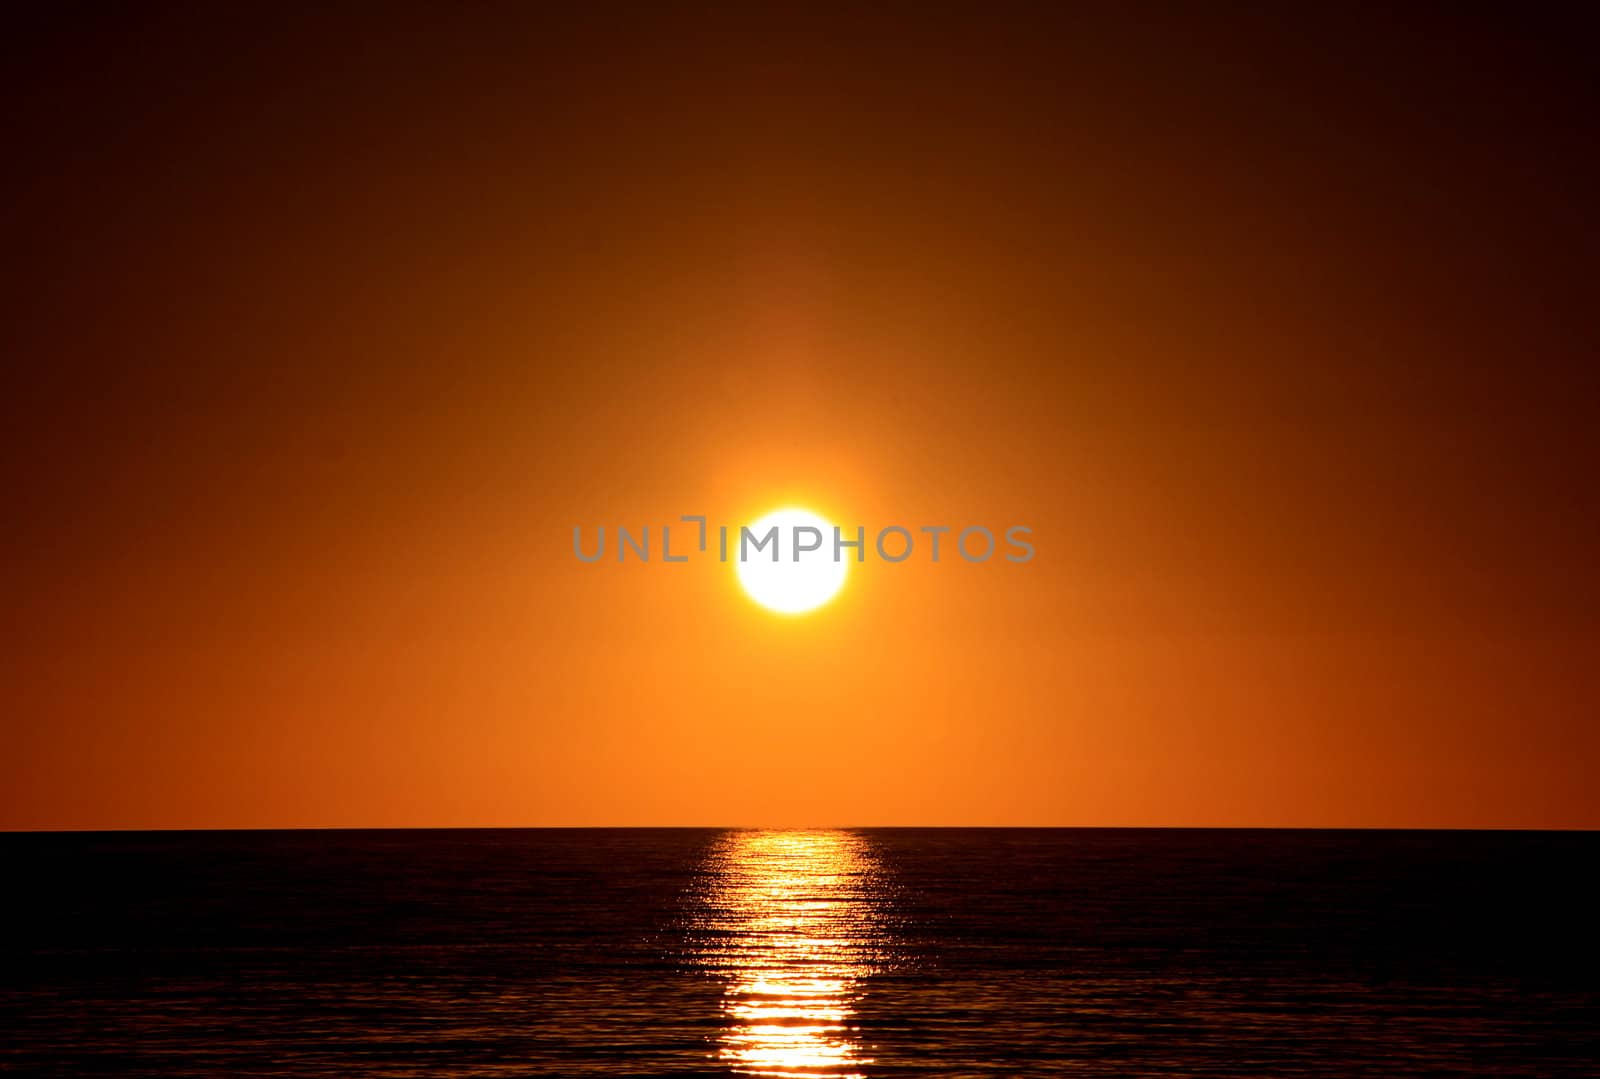 Sunset over Ocean.  Larg's Bay, Adelaide, Australia